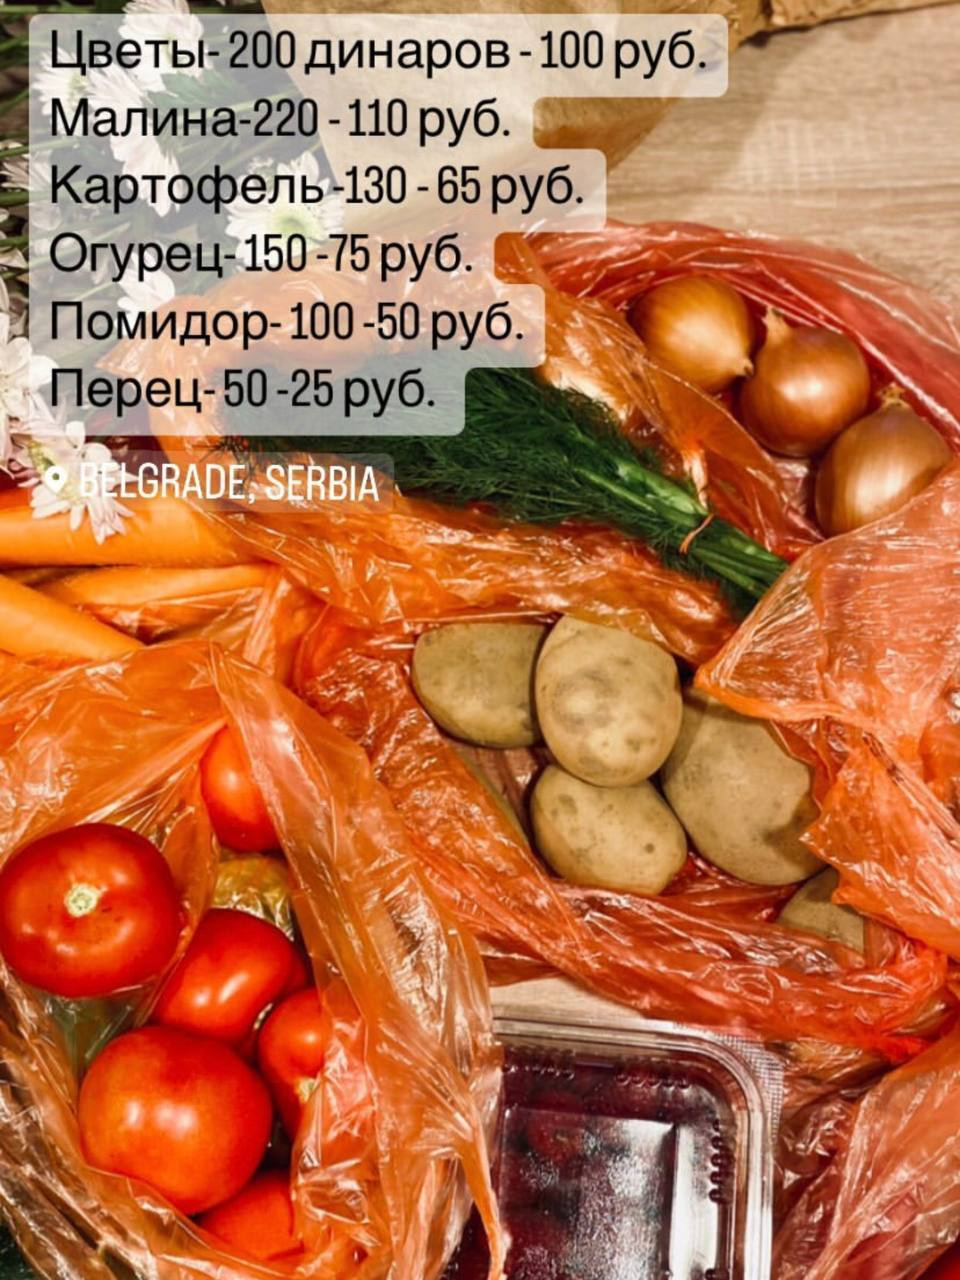 Цены на продукты в сравнении в российскими